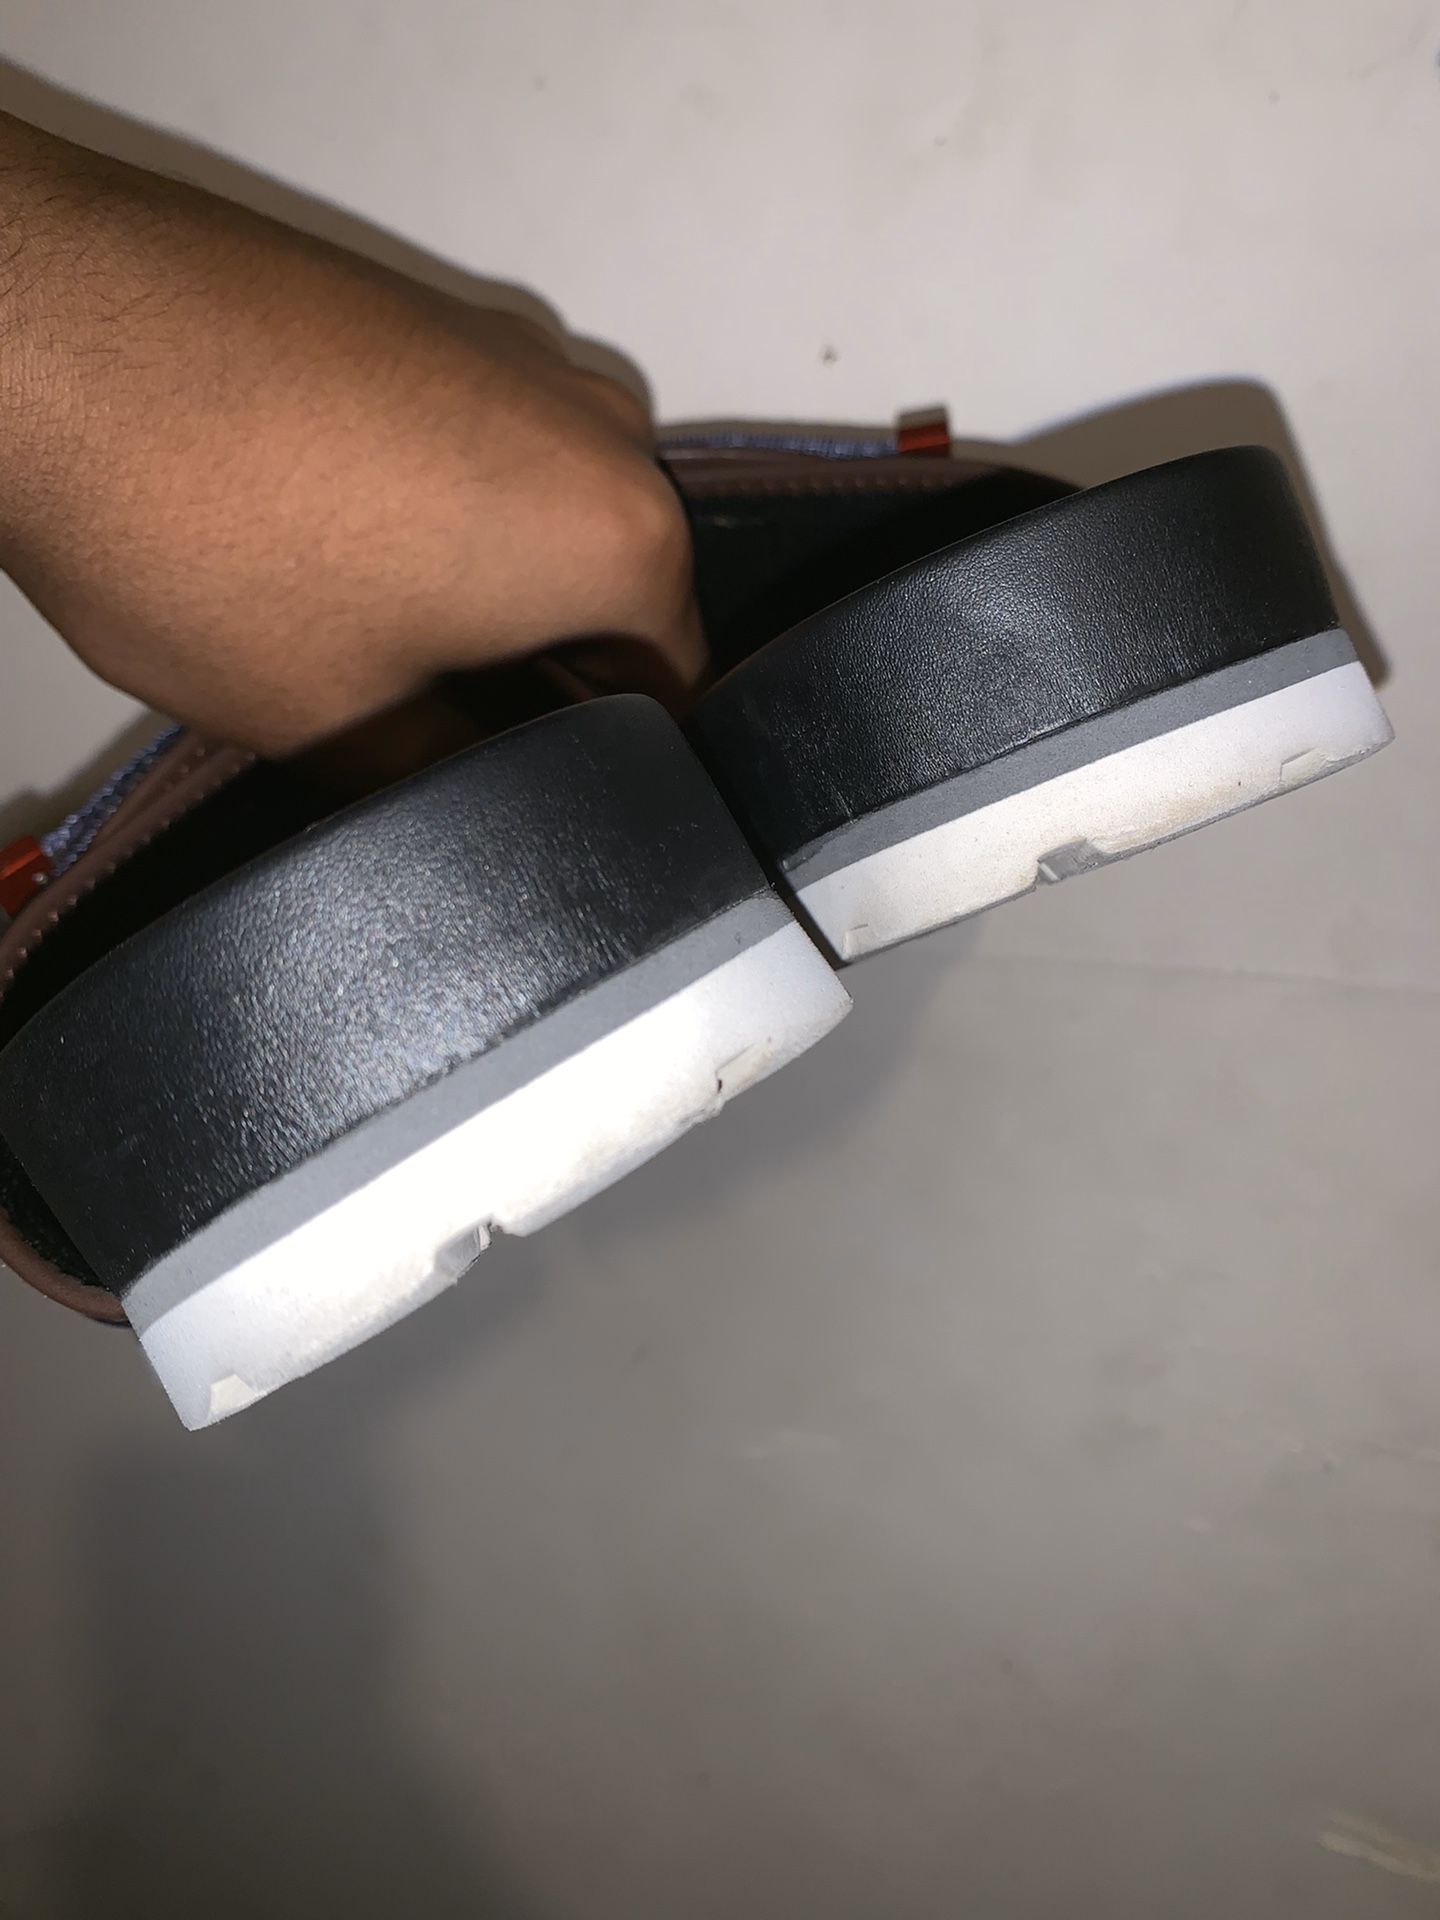 LV signature Gladiator Sandals for Sale in Atlanta, GA - OfferUp